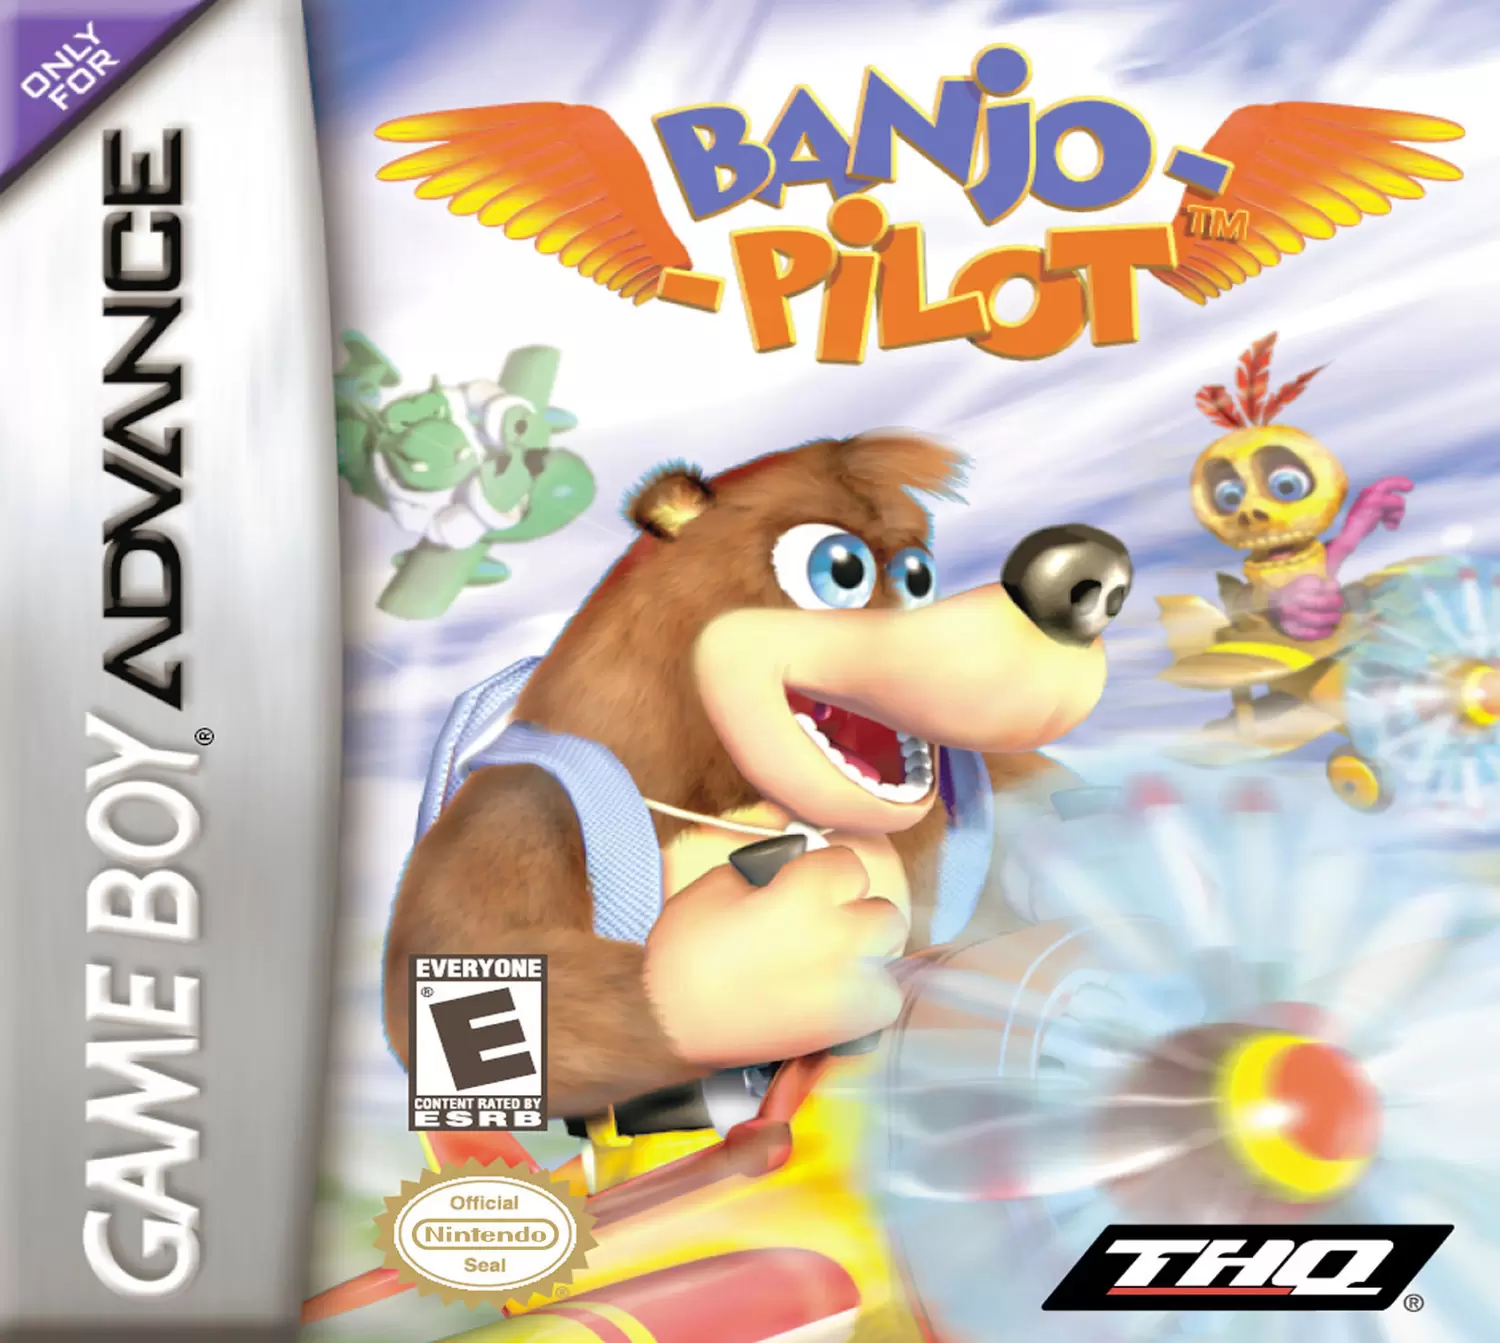 Game Boy Advance Games - Banjo-Pilot